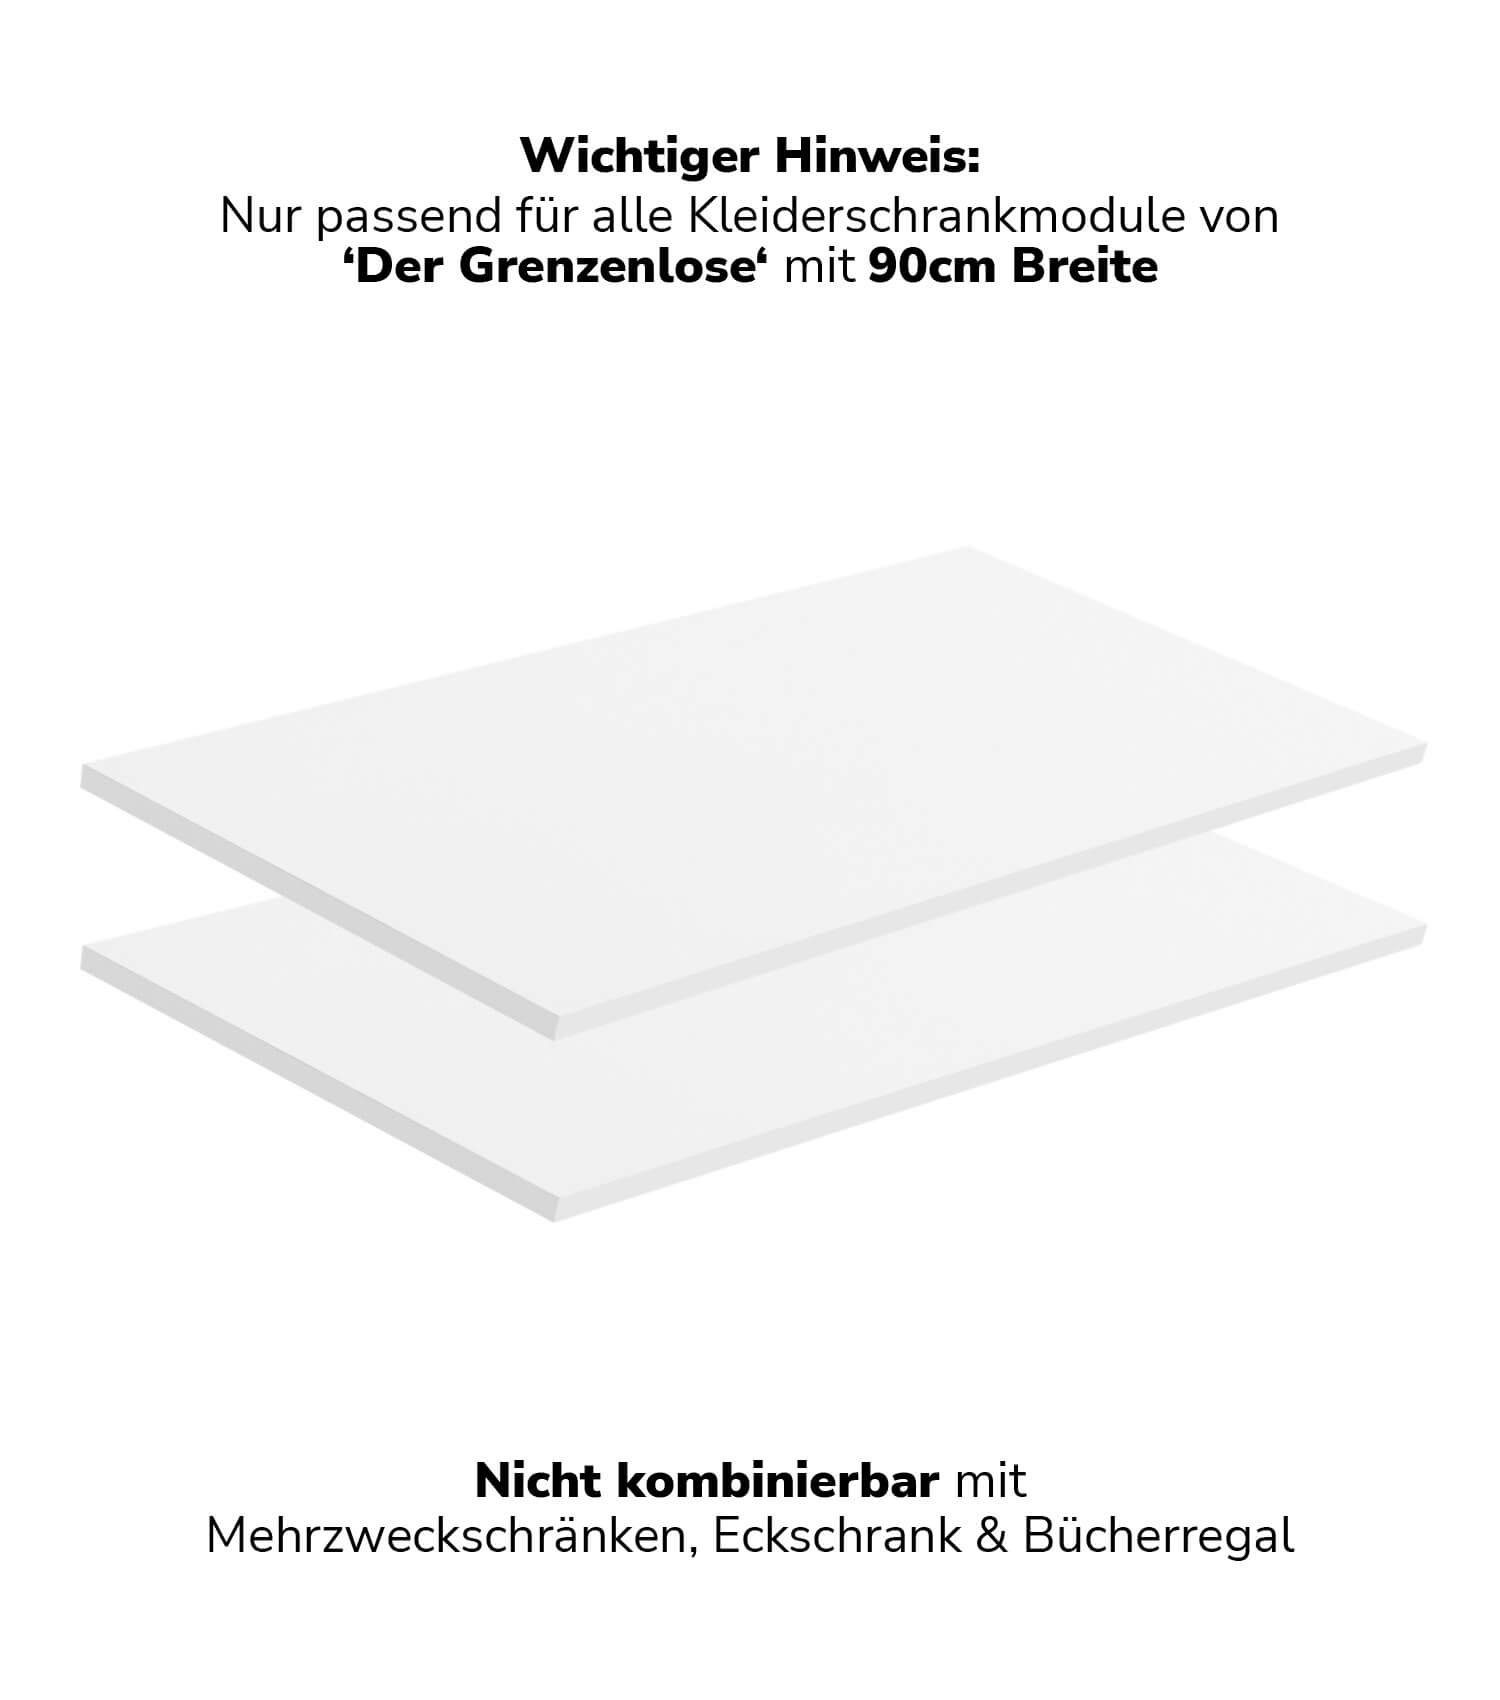 mokebo Einlegeboden Die Ableger (2er-Set), Böden für Kleiderschrank 'Der Grenzenlose' mit 90cm Breite in Weiß